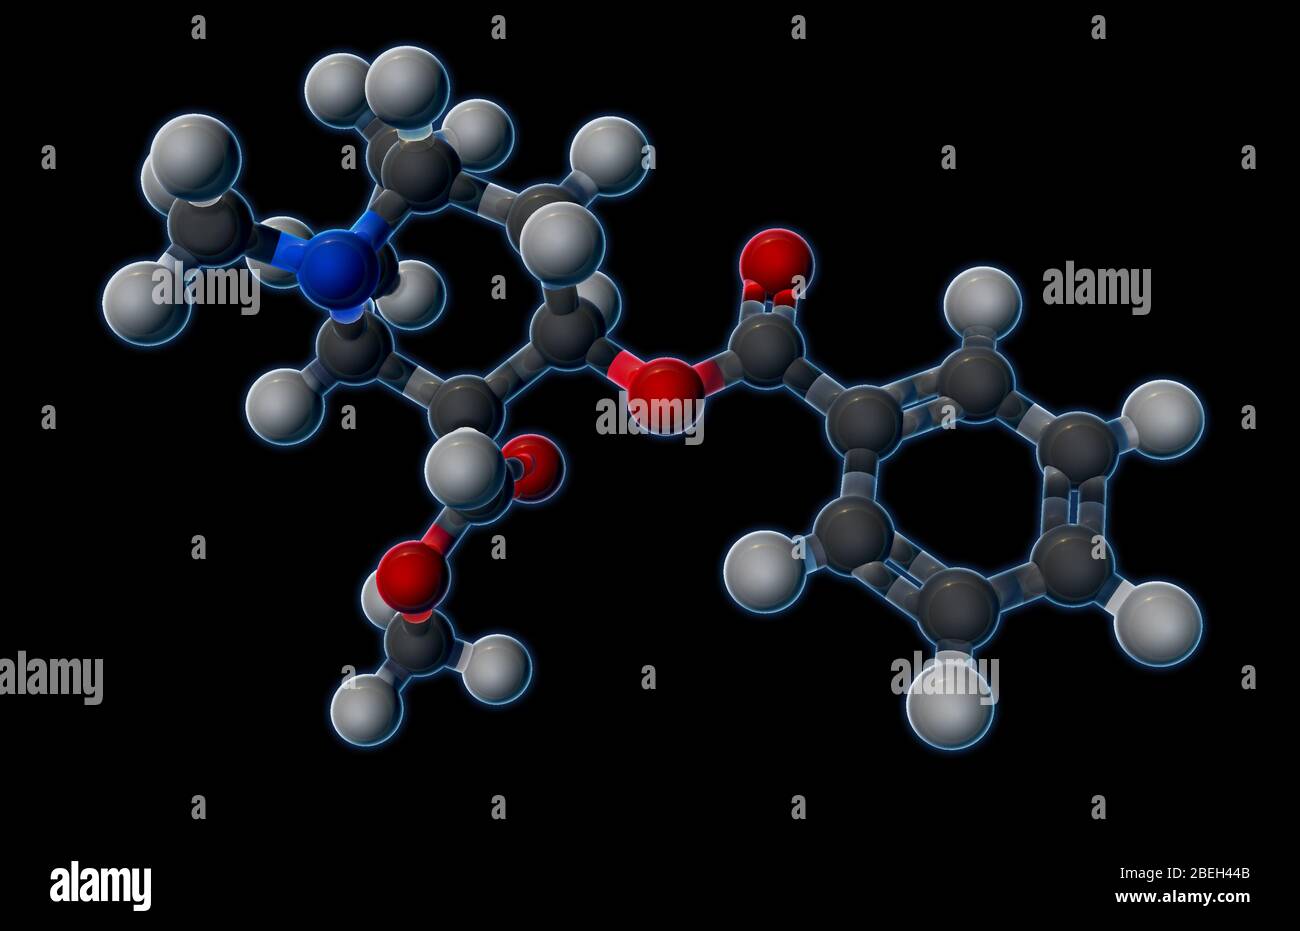 Ein molekulares Modell von Kokain (C17H21NO4), einem Stimulans und Appetitzügler, das aus den Blättern der Kokapflanze gewonnen wird und niedrige Dosen von Anästhesie produziert die Eigenschaften von Kokain erlauben es, die Blut-Hirn-Schranke leichter zu passieren als andere psychoaktive Chemikalien. Die Suchtnatur des Medikaments macht gefährlicher als andere Stimulanzien, da höhere Dosen zu plötzlichem Herztod führen können. Atome sind dunkelgrau (Kohlenstoff), hellgrau (Wasserstoff), rot (Sauerstoff) und blau (Stickstoff). Stockfoto